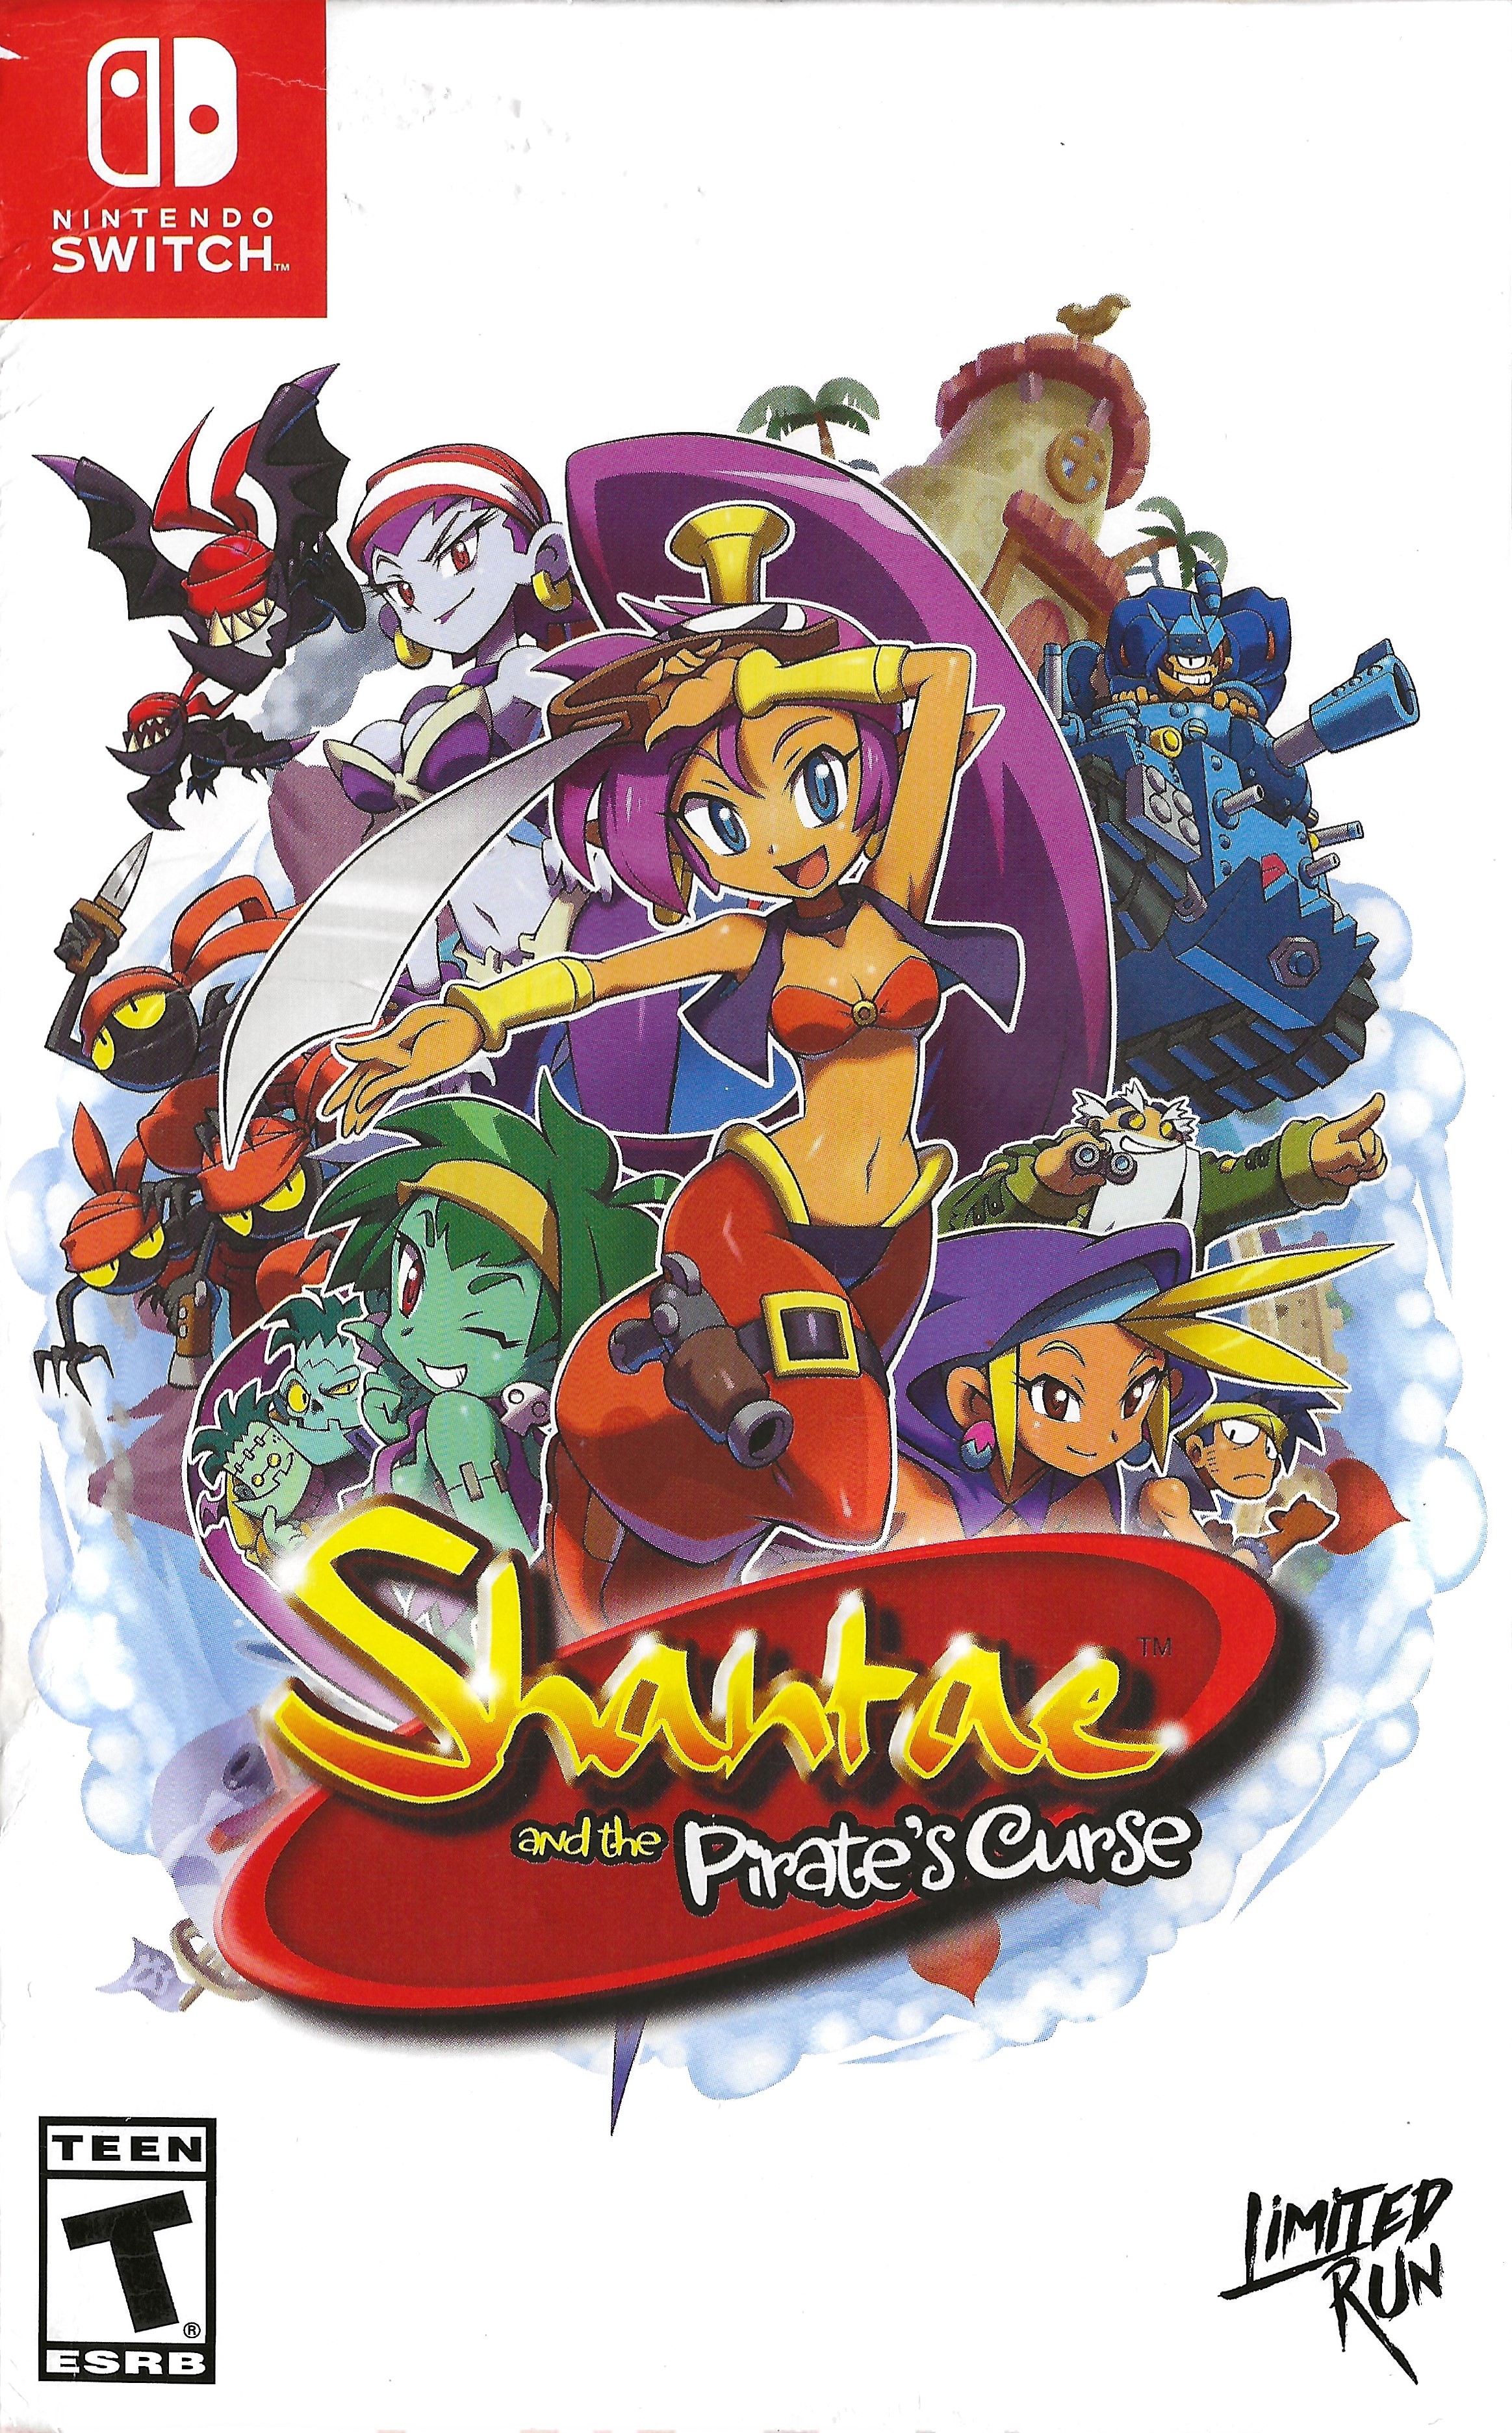 Shantae: and the Pirates Curse